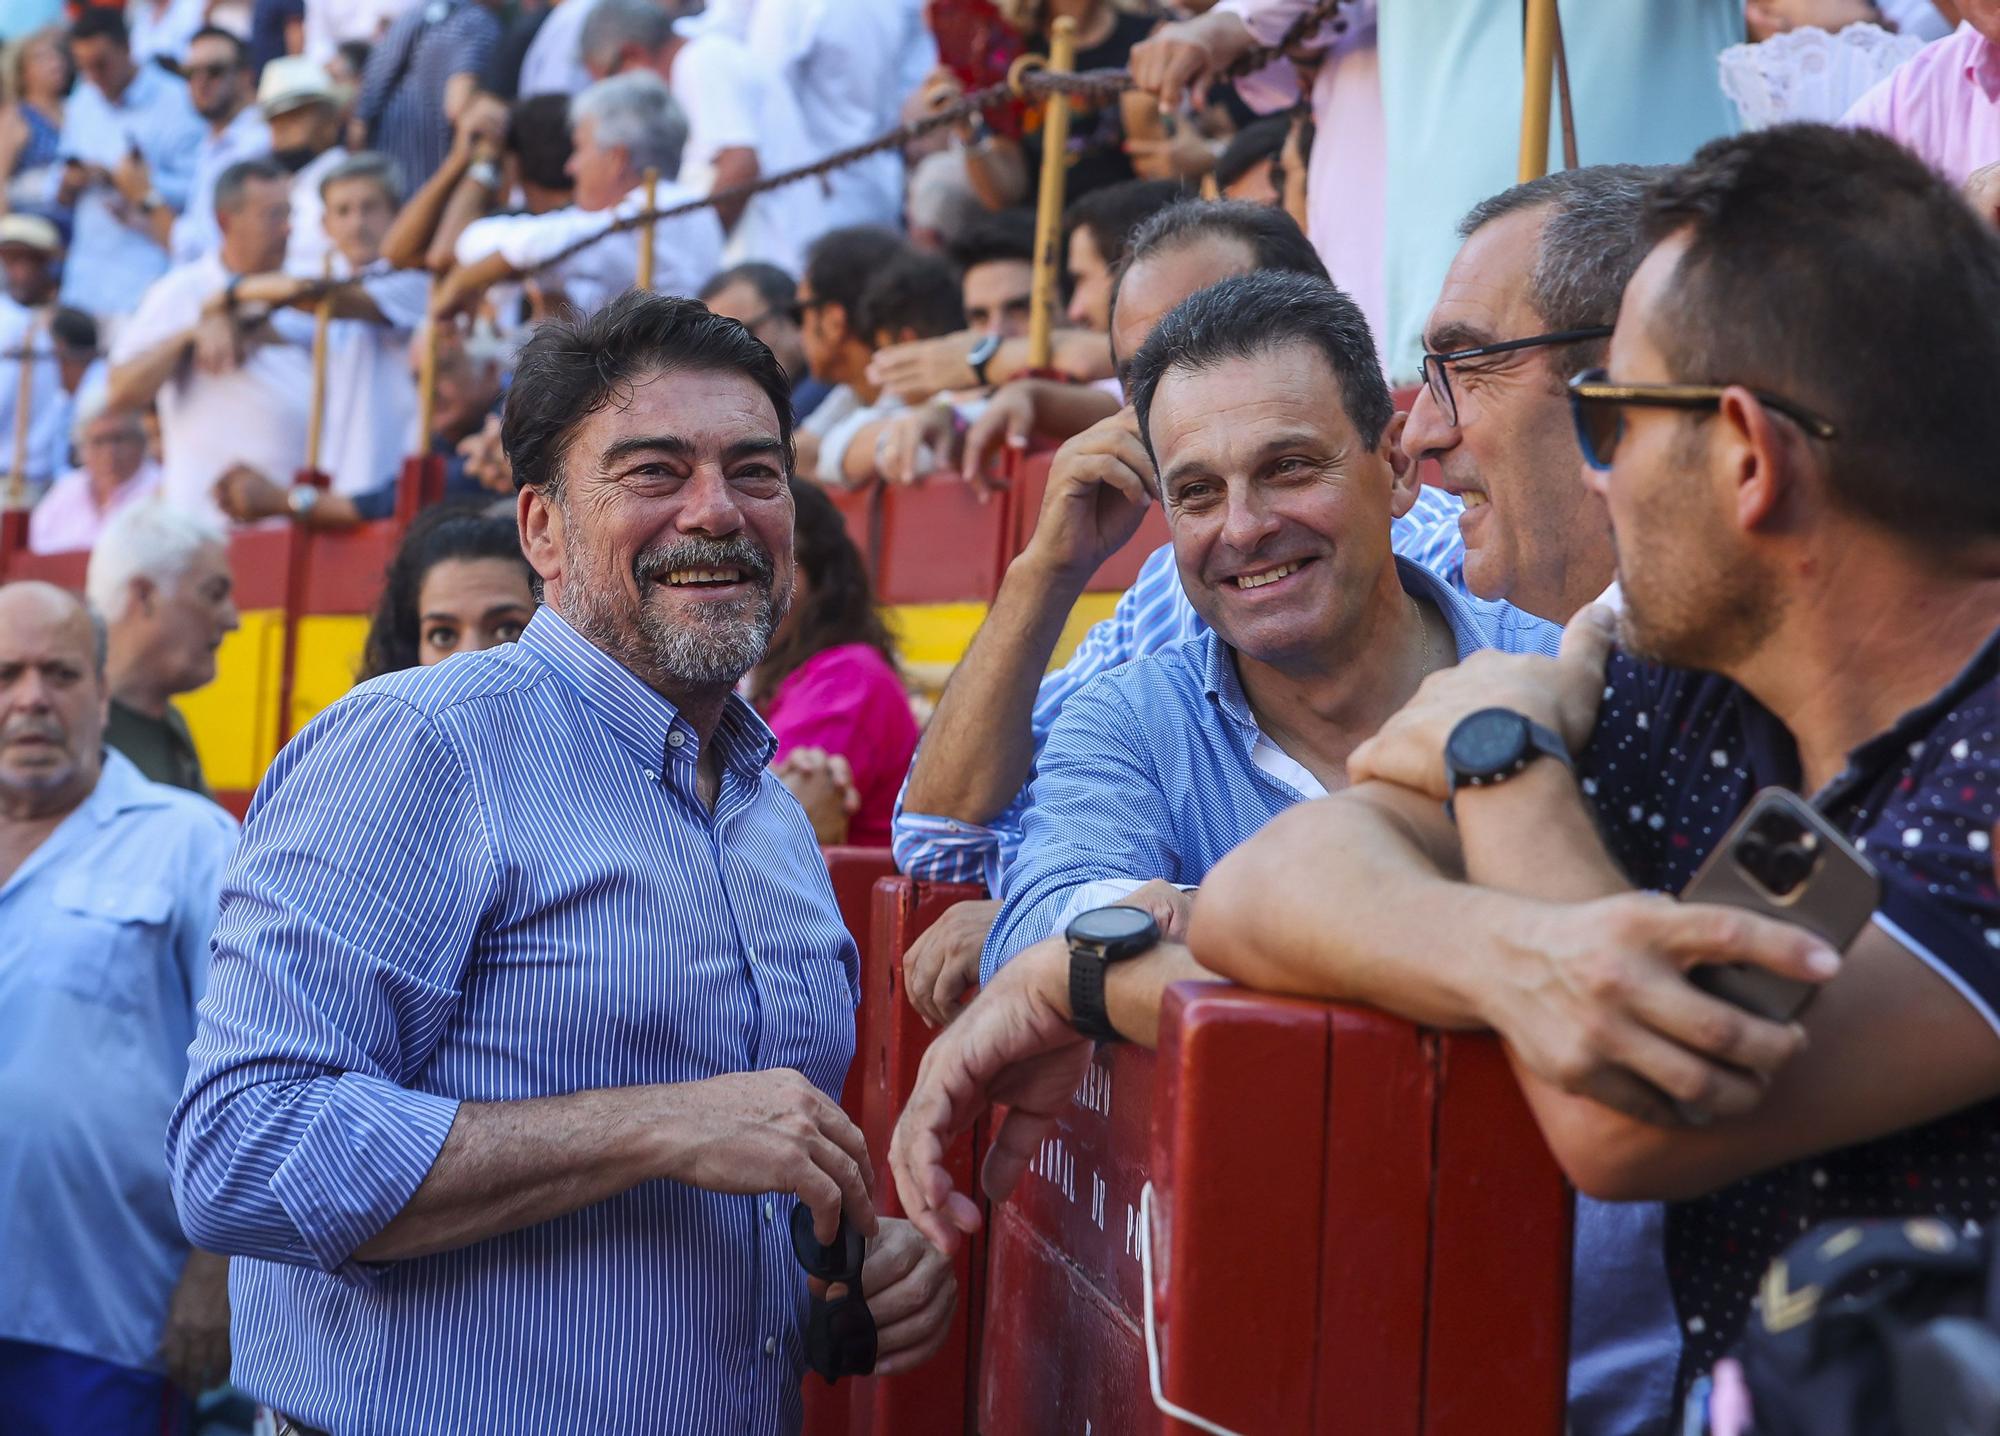 El alcalde de Alicante, Luis Barcala, como un aficionado m�s no quiso perderse un evento �nico para la ciudad como ha sido la corrida del diestro Jos� Tom�s.jpg